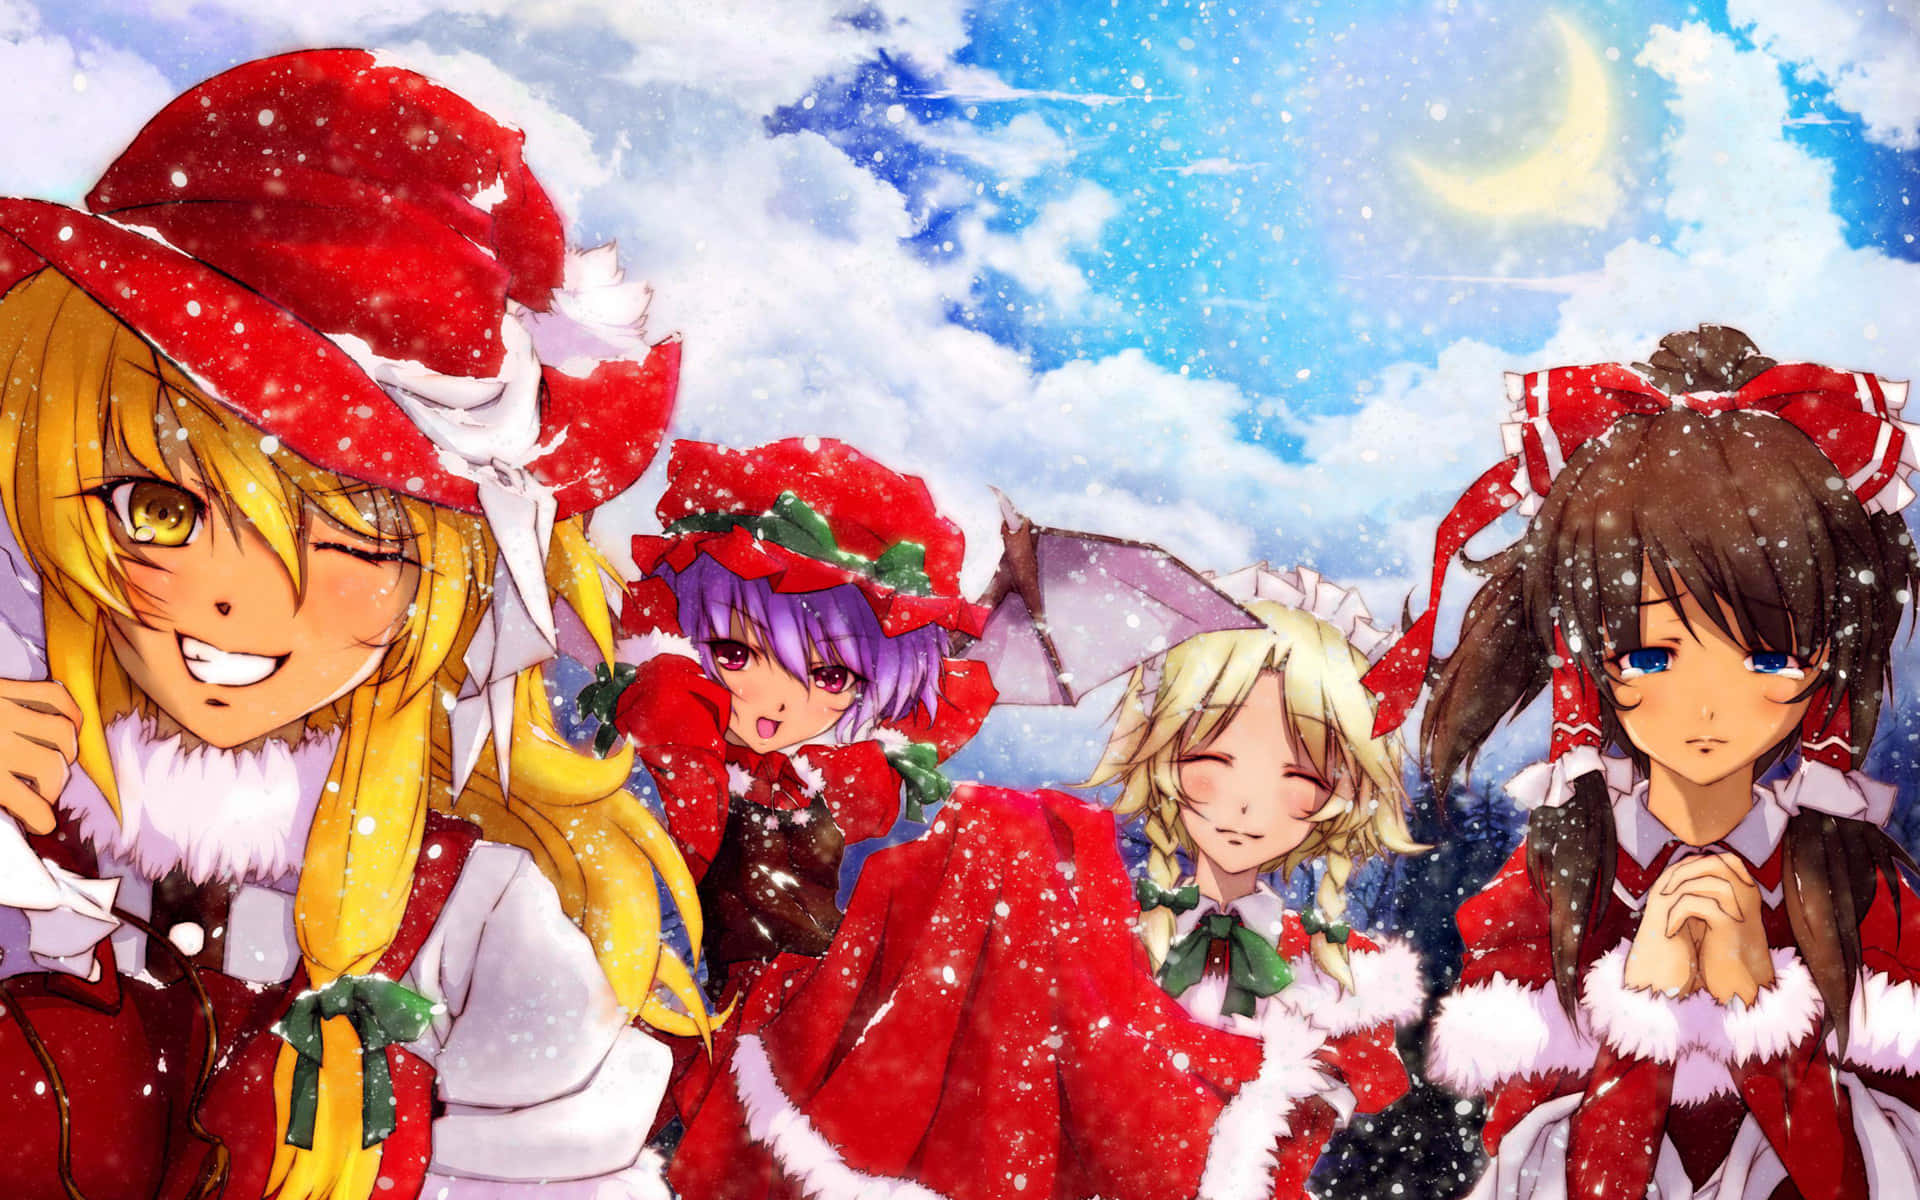 Feiernsie Die Feiertage Mit Diesem Festlichen Anime-weihnachts-hintergrund!